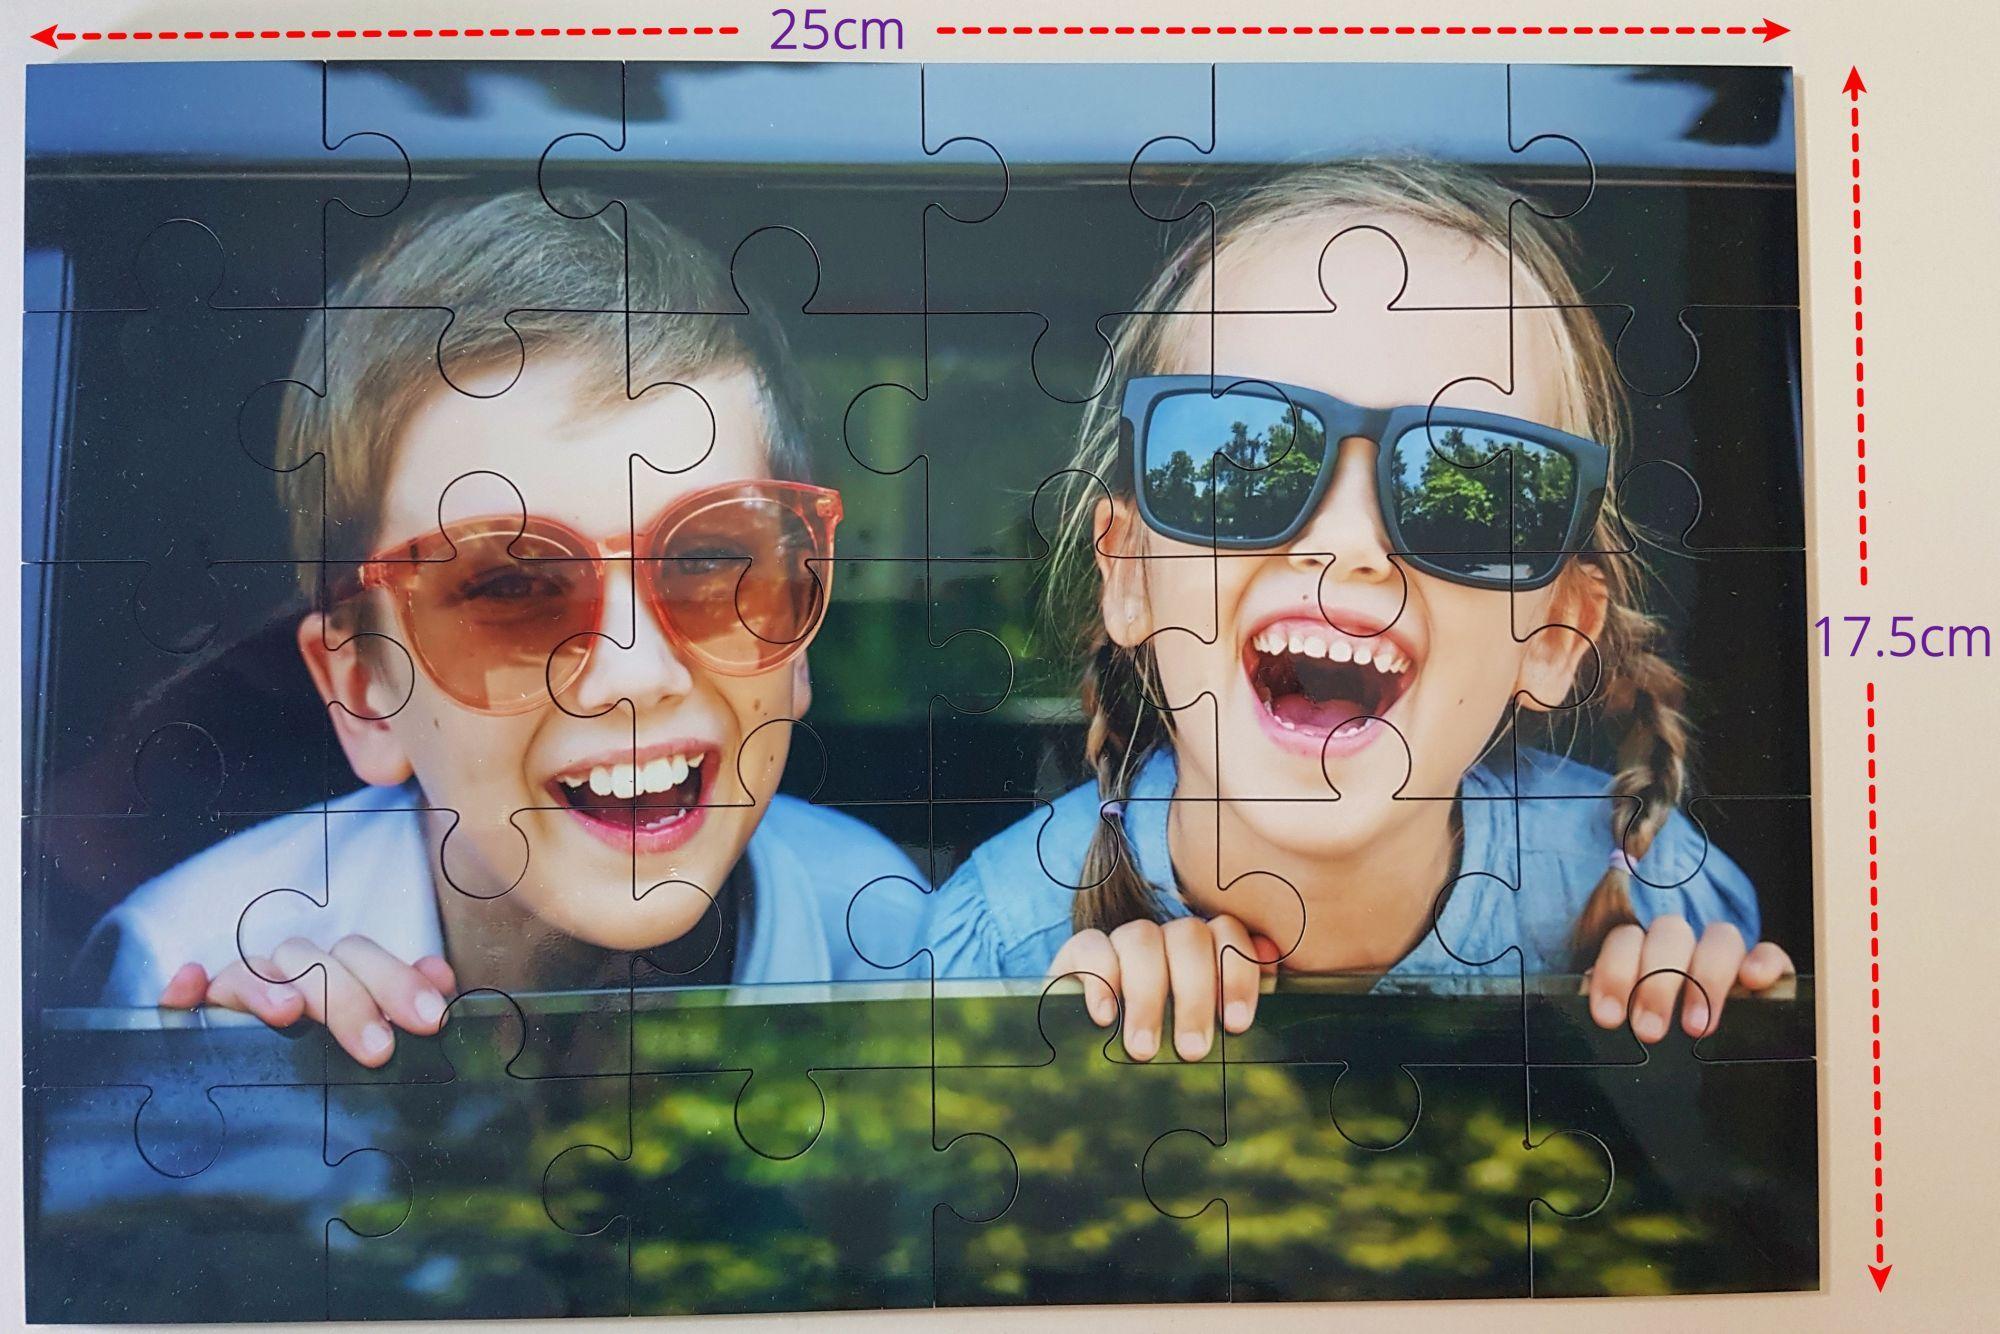 wooden jigsaw puzzle 25cm x 17.5cm